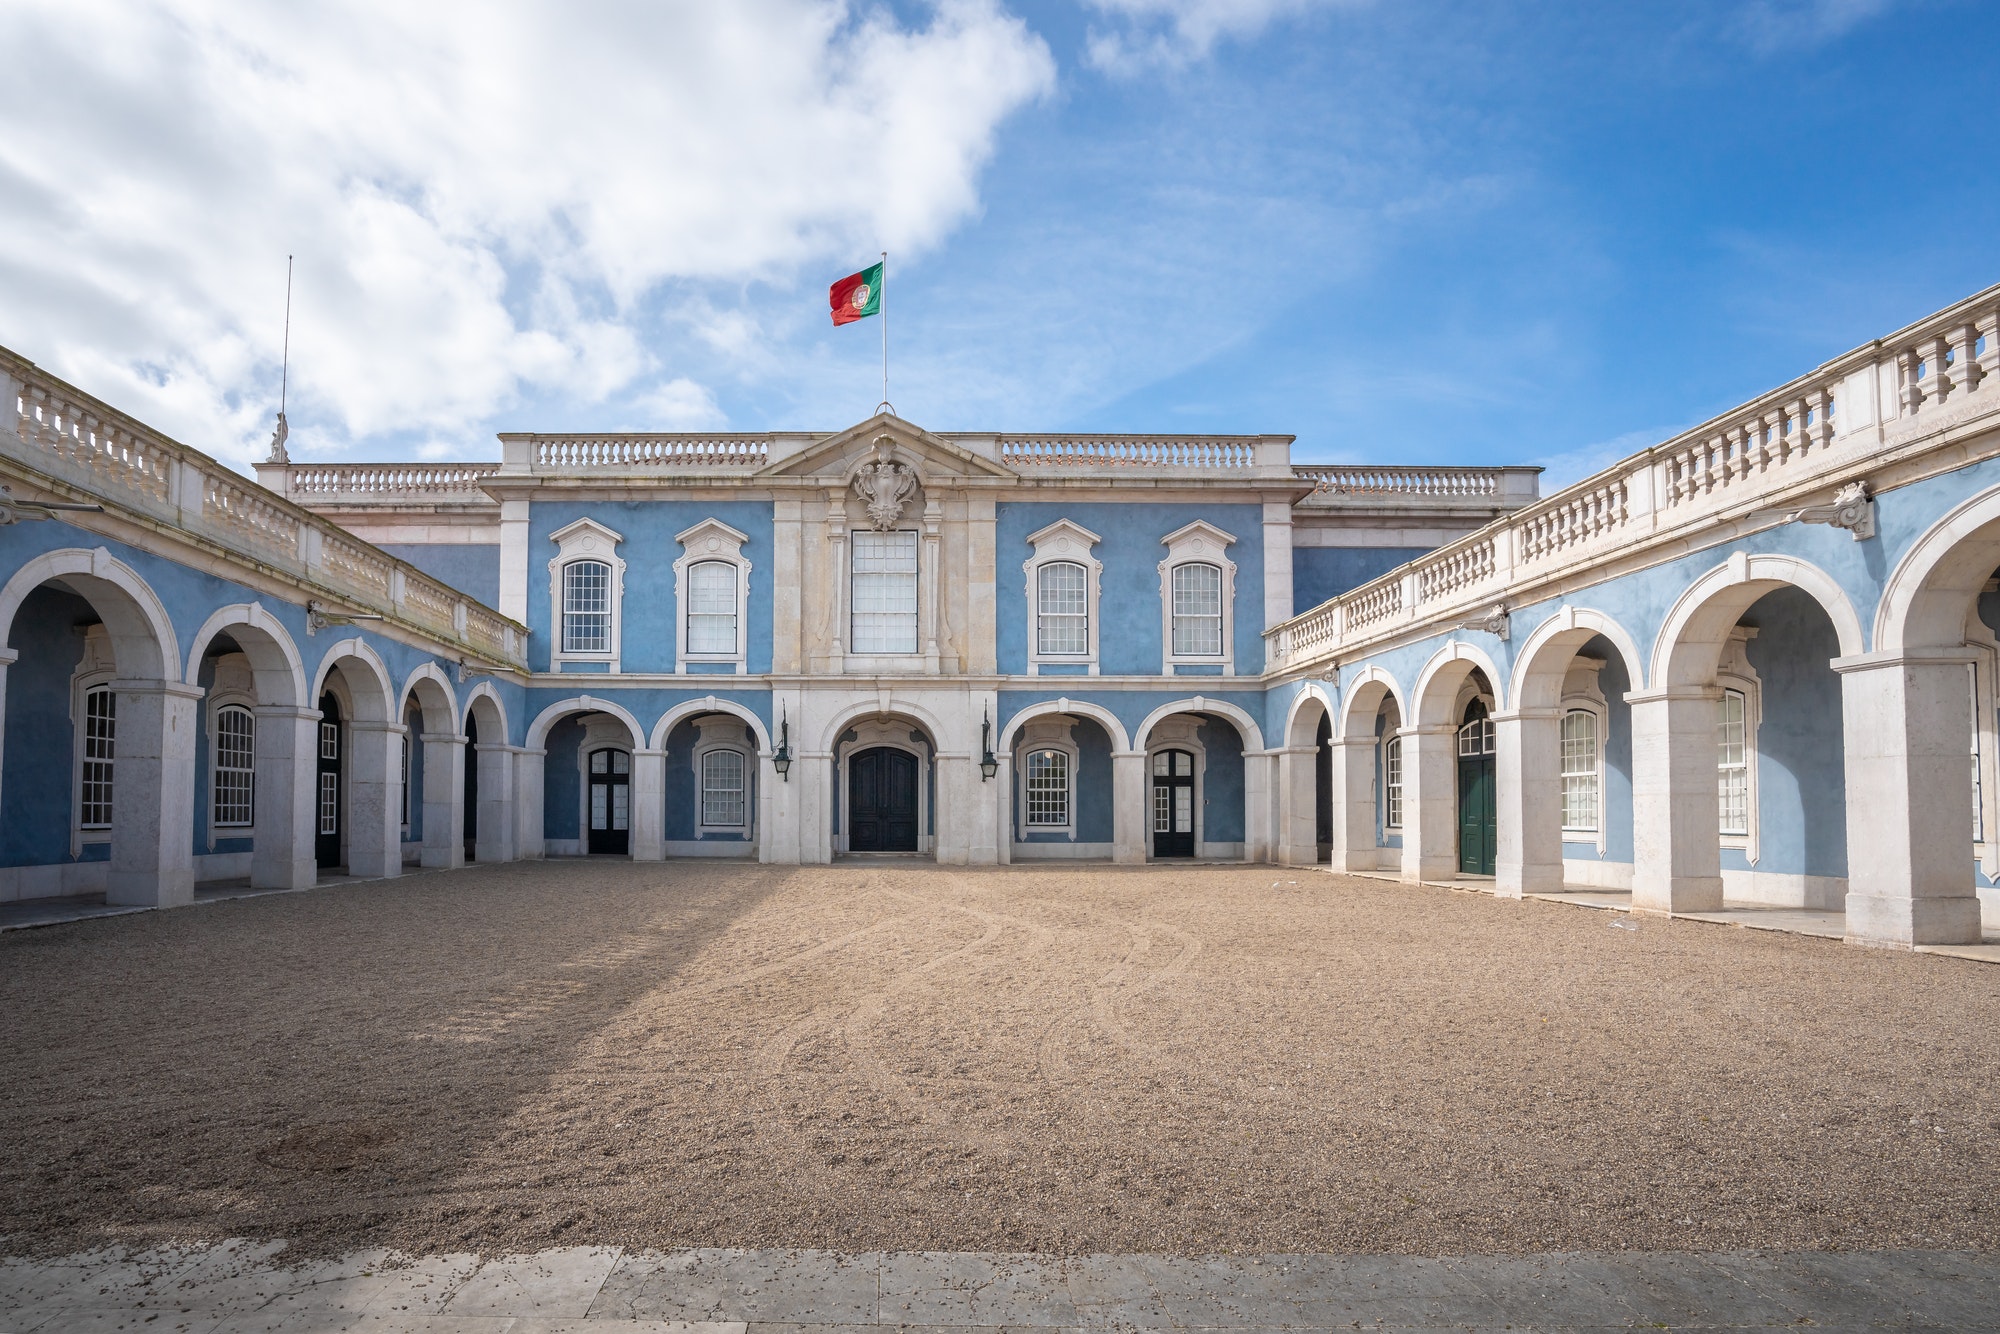 Palace of Queluz facade with portuguese flag - Queluz, Portugal